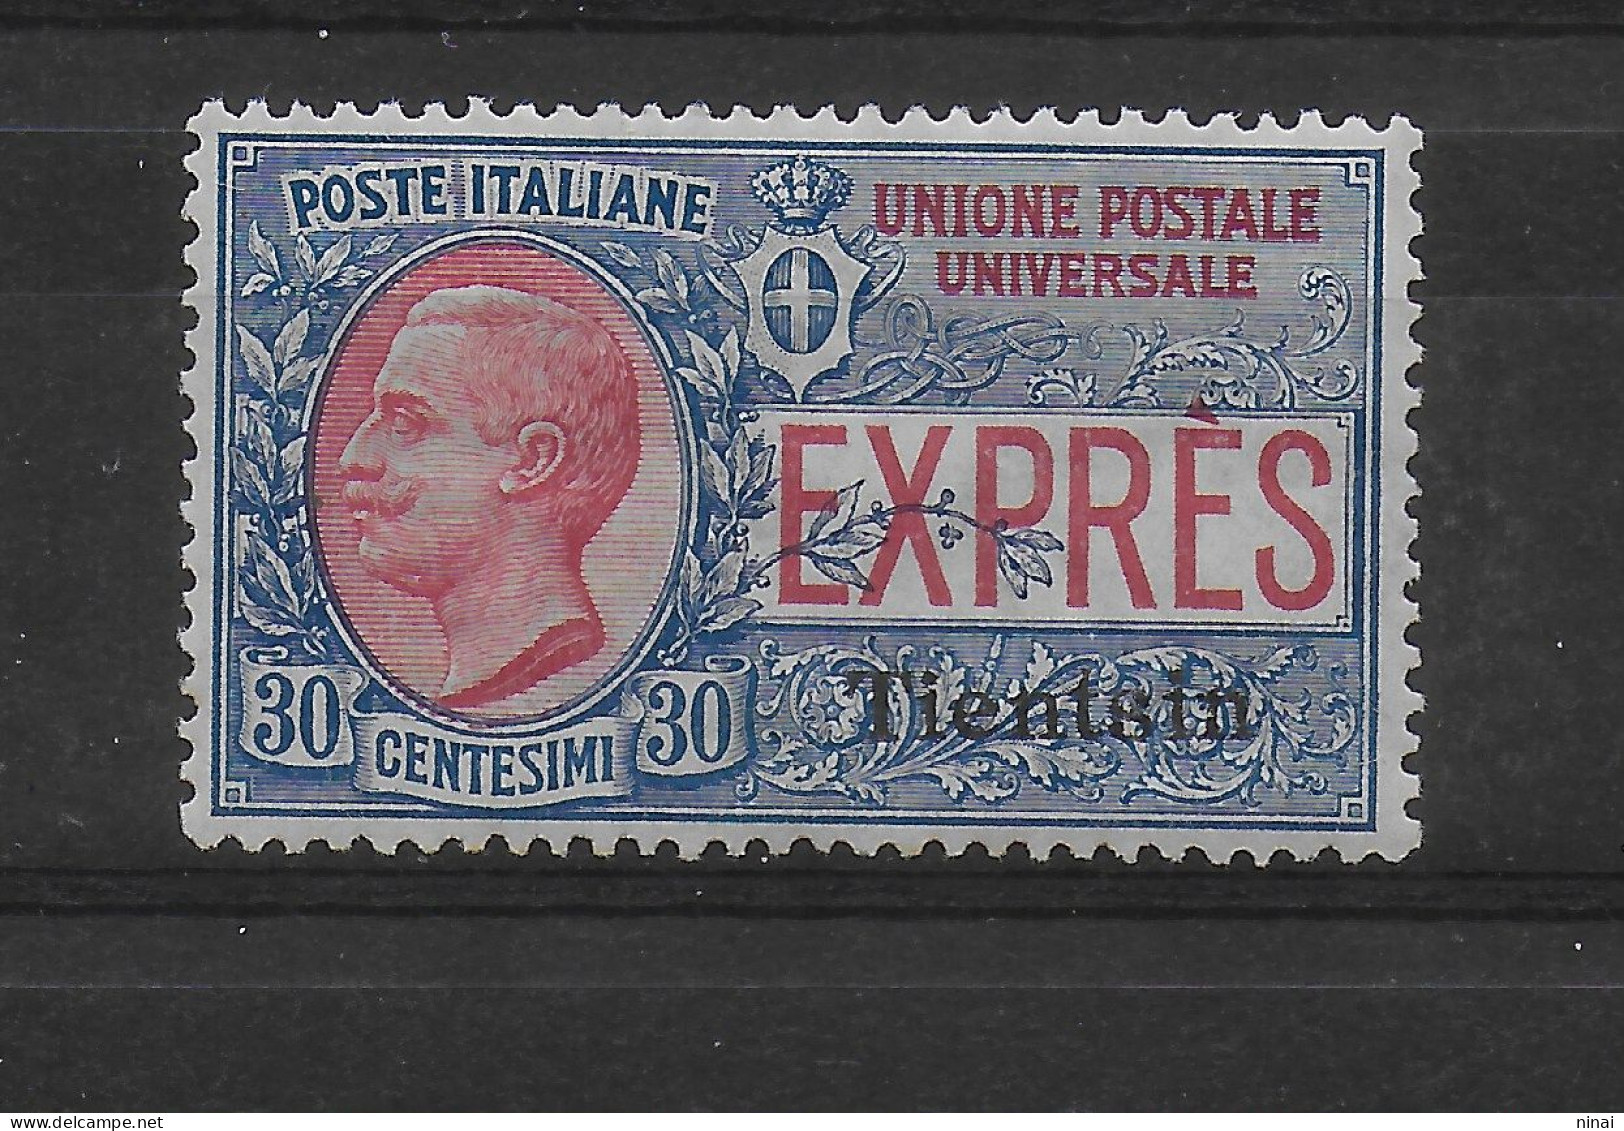 UFFICI POSTALI IN CINA 1917 PECHINO USED-USATO   ESPRESSO NUMERO 2 ** MNH  LUSSO FIRMATO SASSONE €.900,00 C882A - Express Letter Stamps